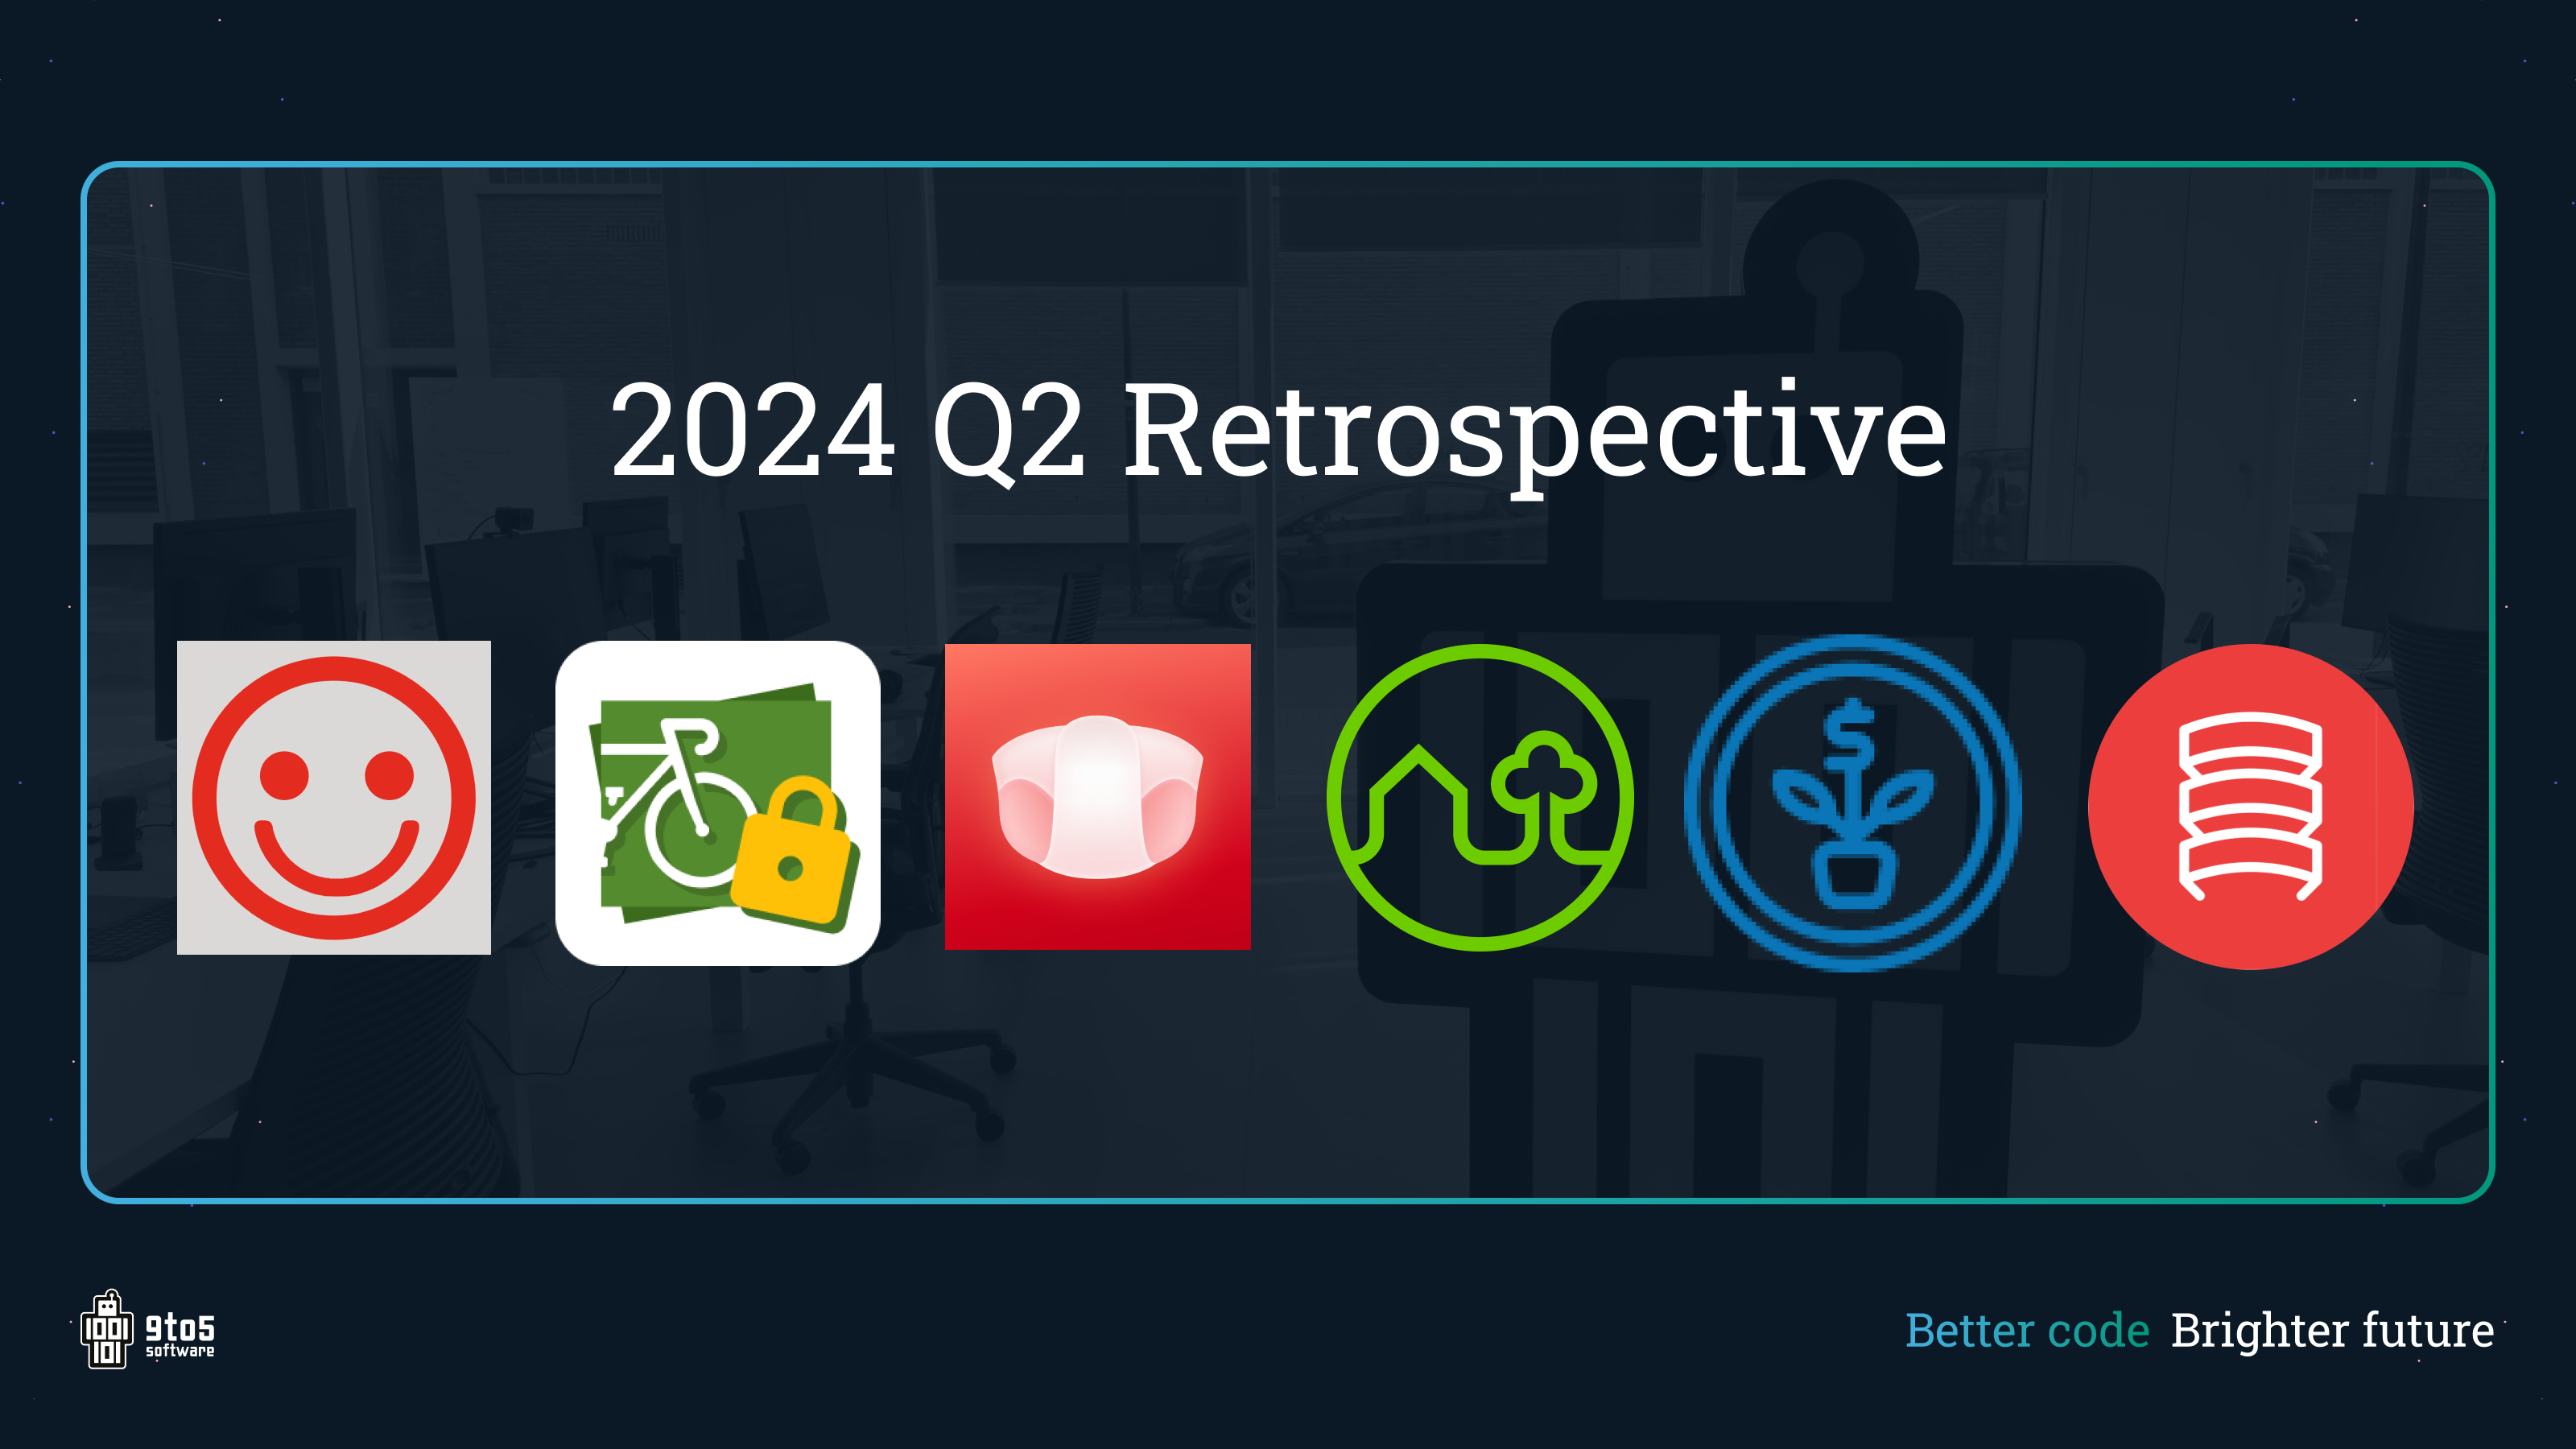 Q2 2024 Retrospective: Een kwartaal van innovatie bij 9to5 - Kleine updates, onderhoud van apps, maar ook nieuwe features en zelfs twee nieuwe launches! Deze blog geeft een overzicht van alles wat we de afgelopen 3 maanden hebben bereikt.